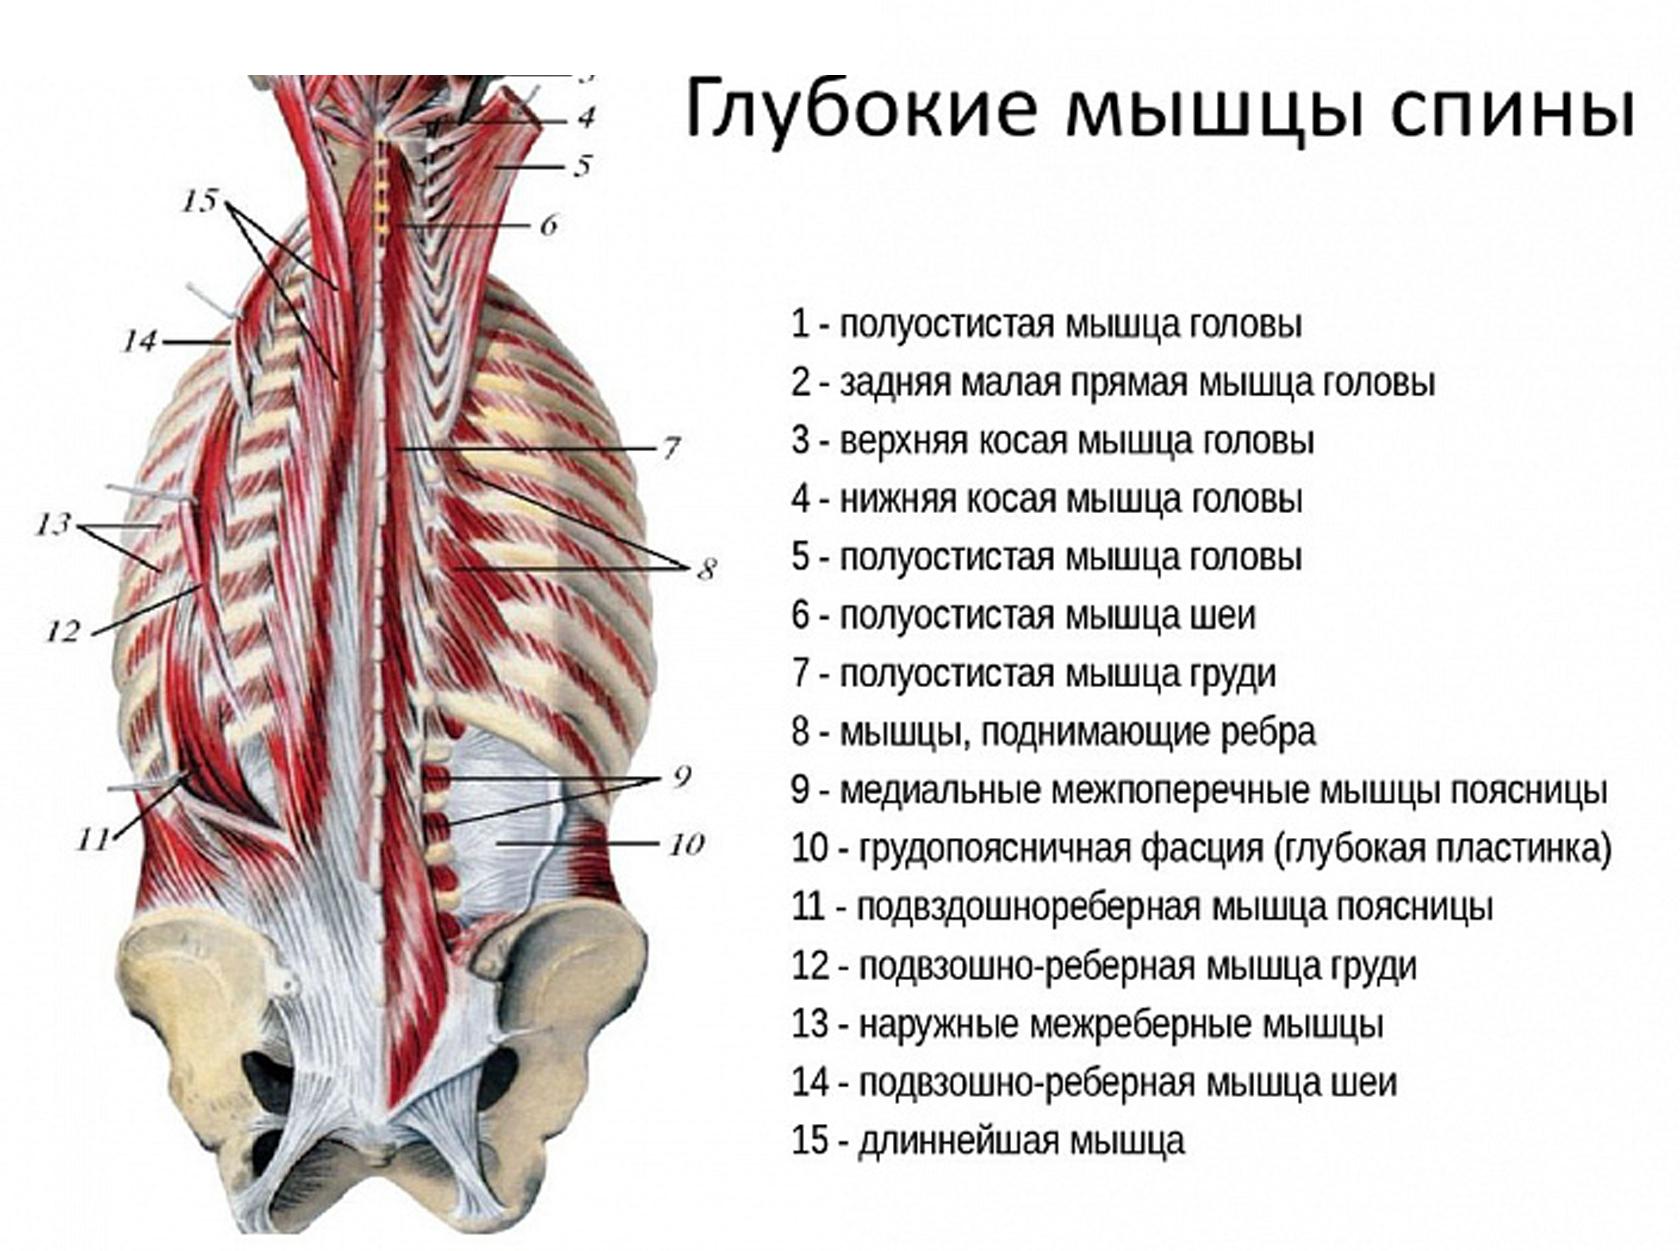 Анатомия грудной клетки, позвоночника,мышцы спины, плечевого пояса